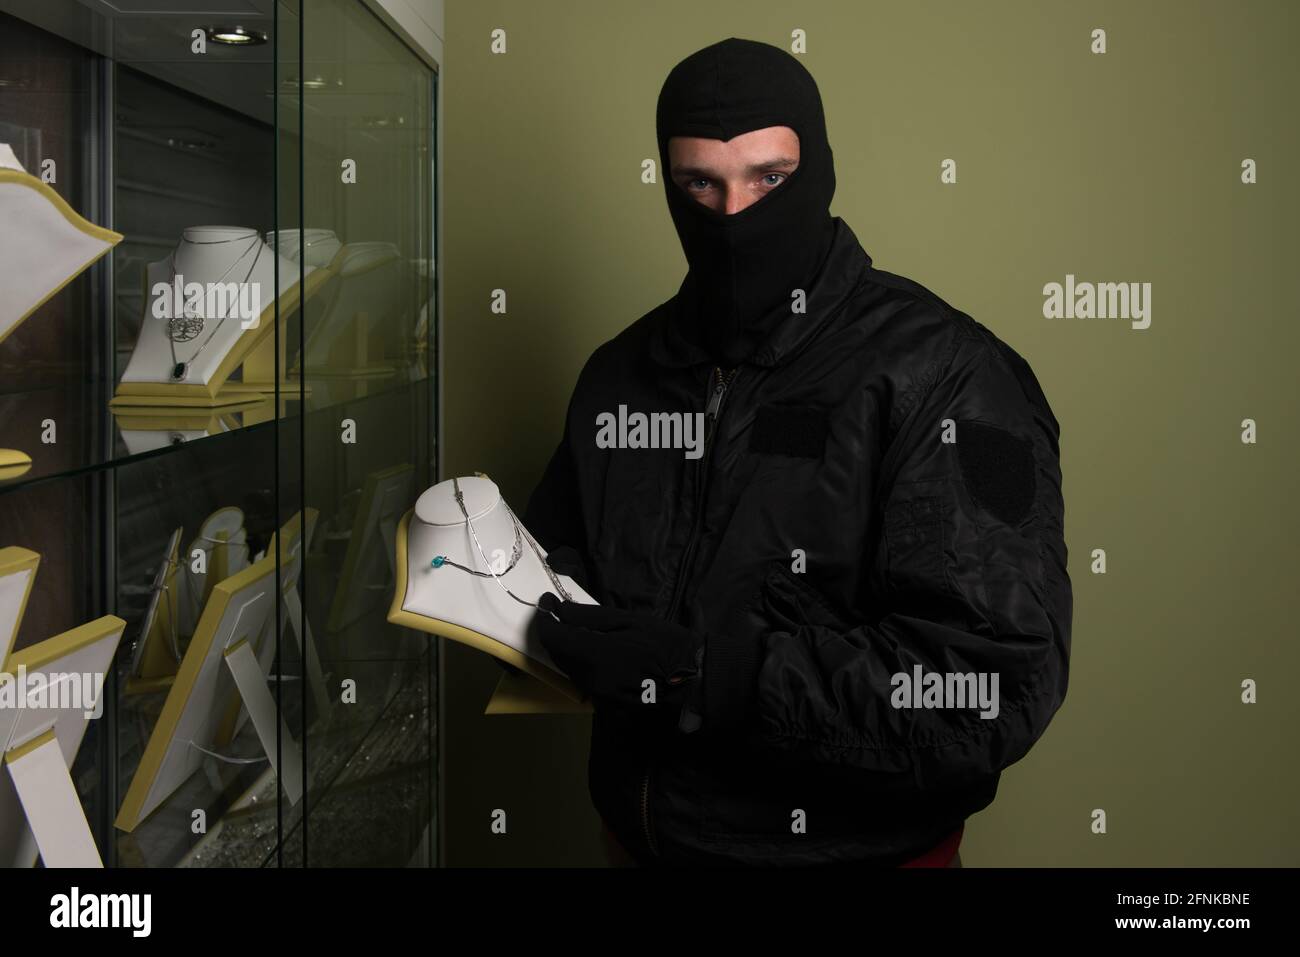 Un homme portant un masque a volé un magasin de bijoux - vol Concept Banque D'Images